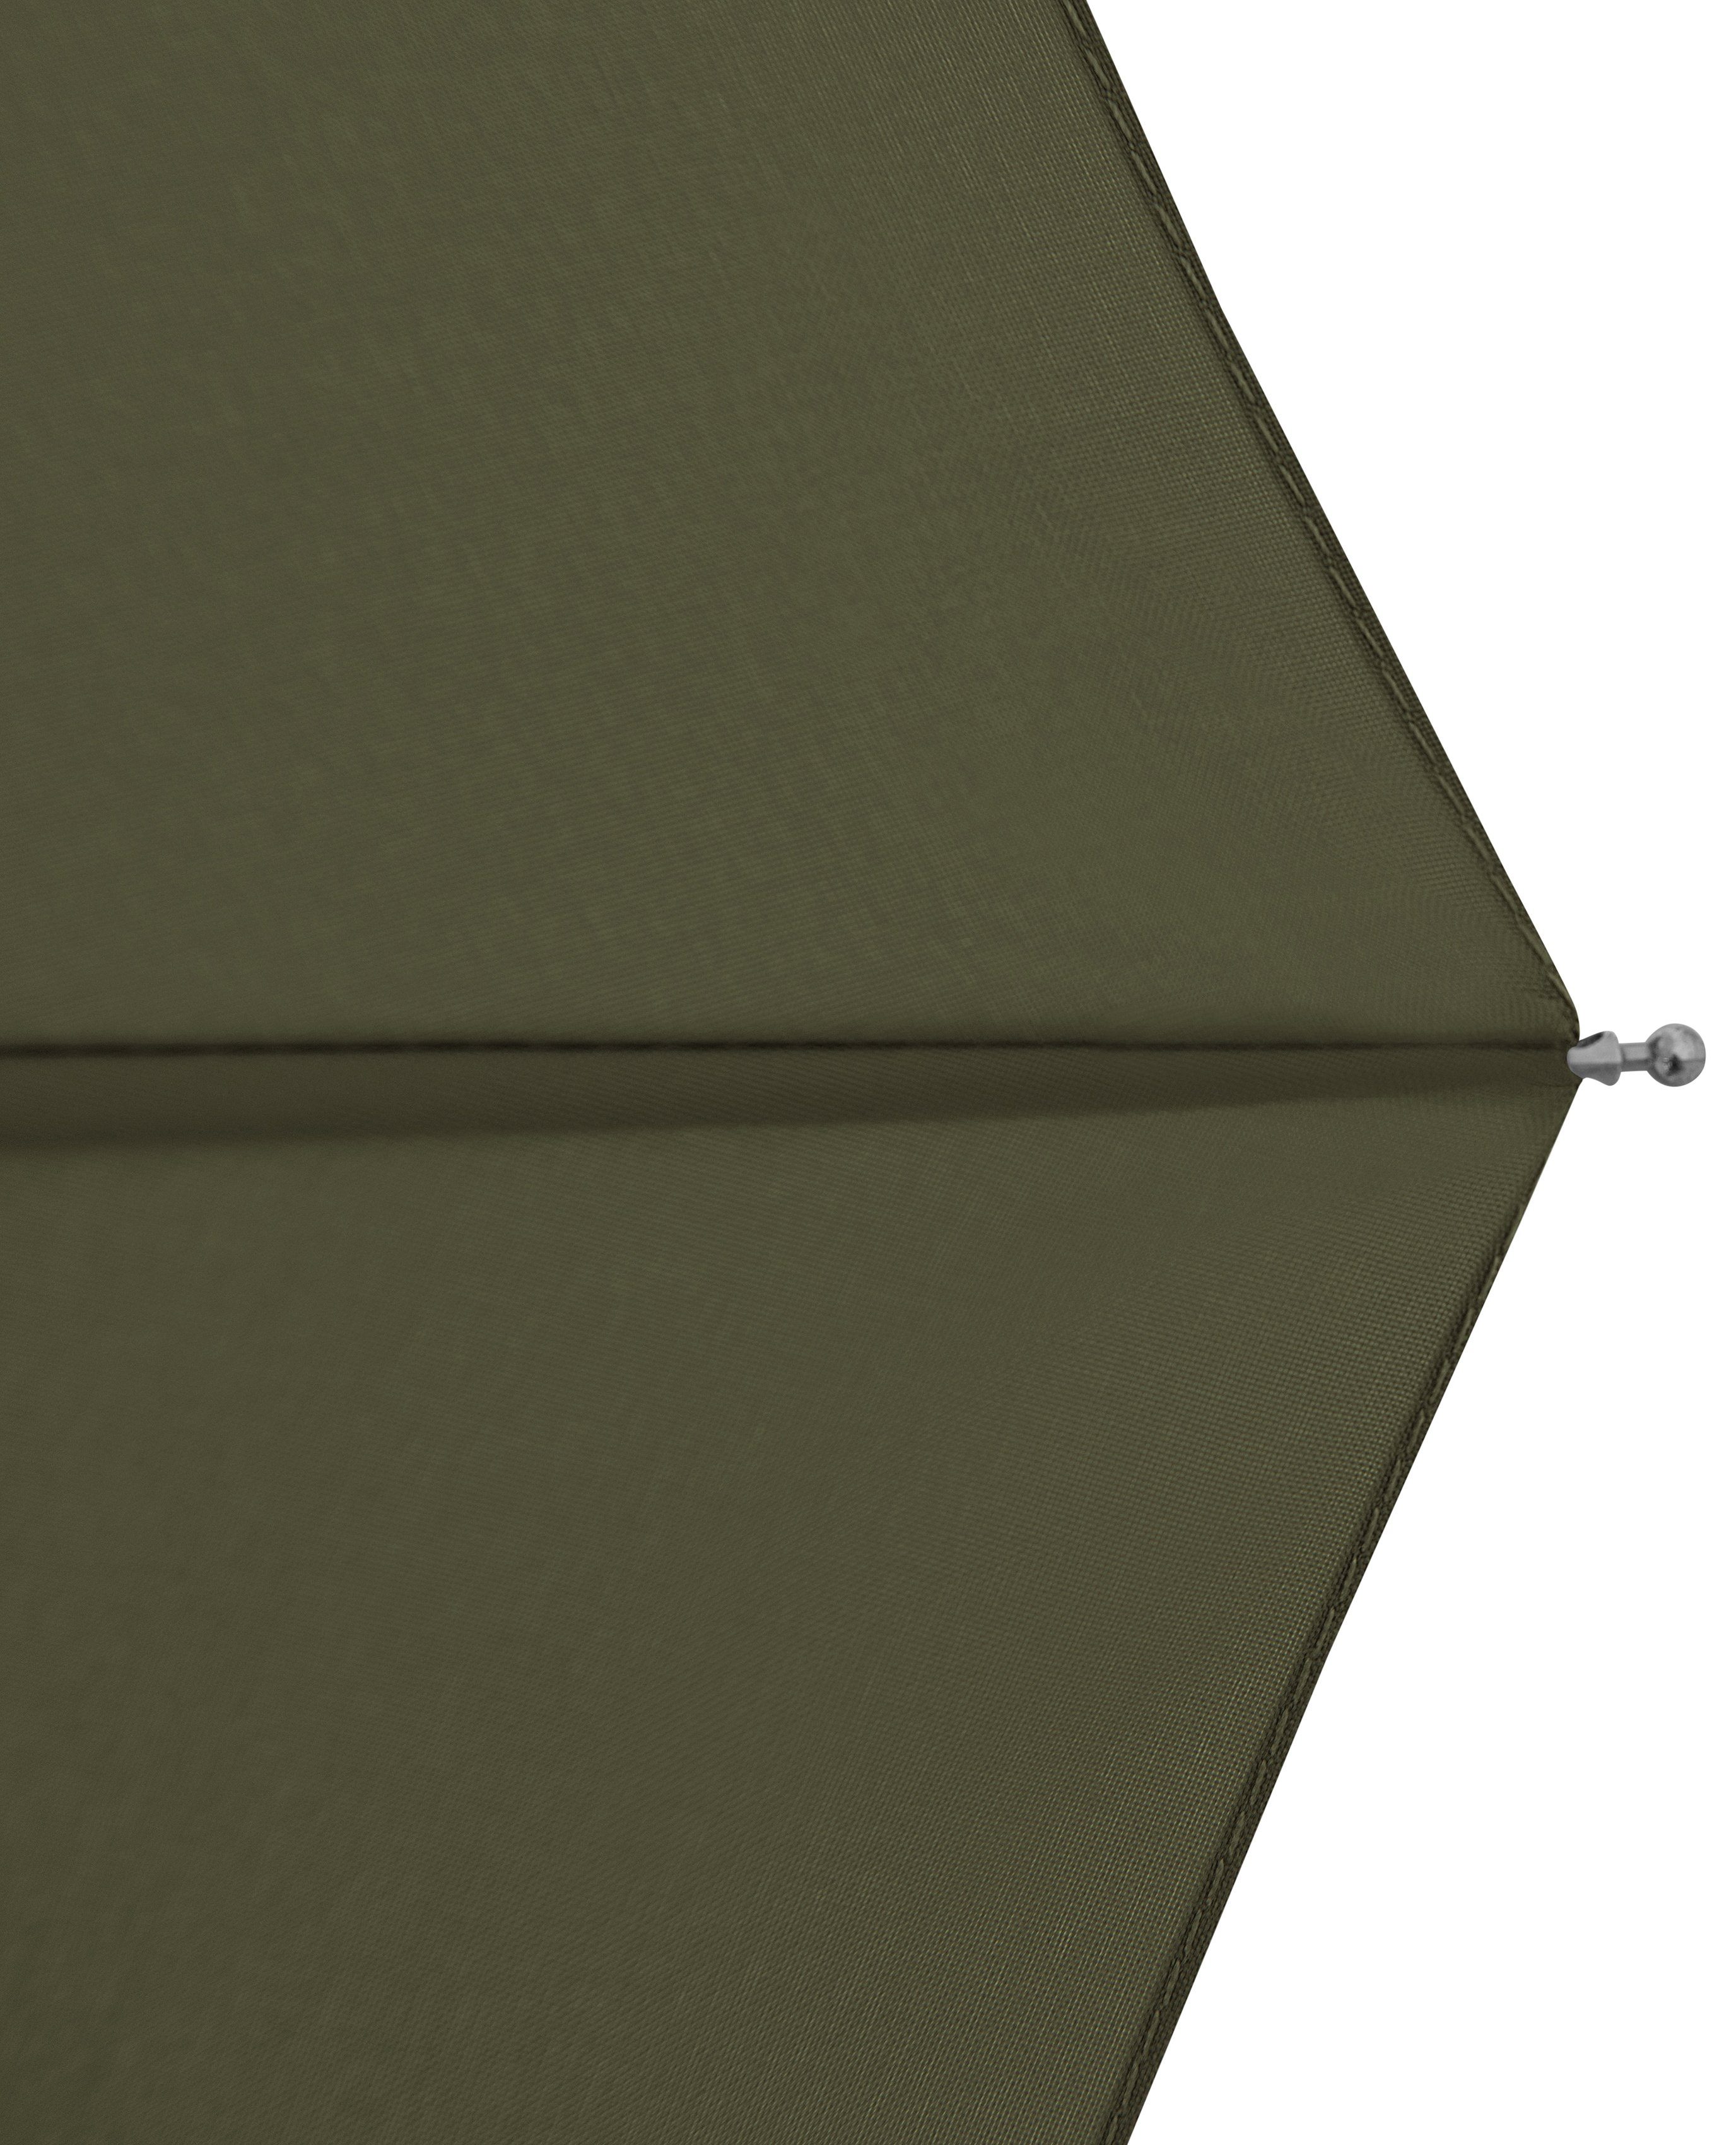 doppler® Taschenregenschirm nature Mini, deep aus Wald - Griff schützt aus olive, Material weltweit recyceltem mit FSC®